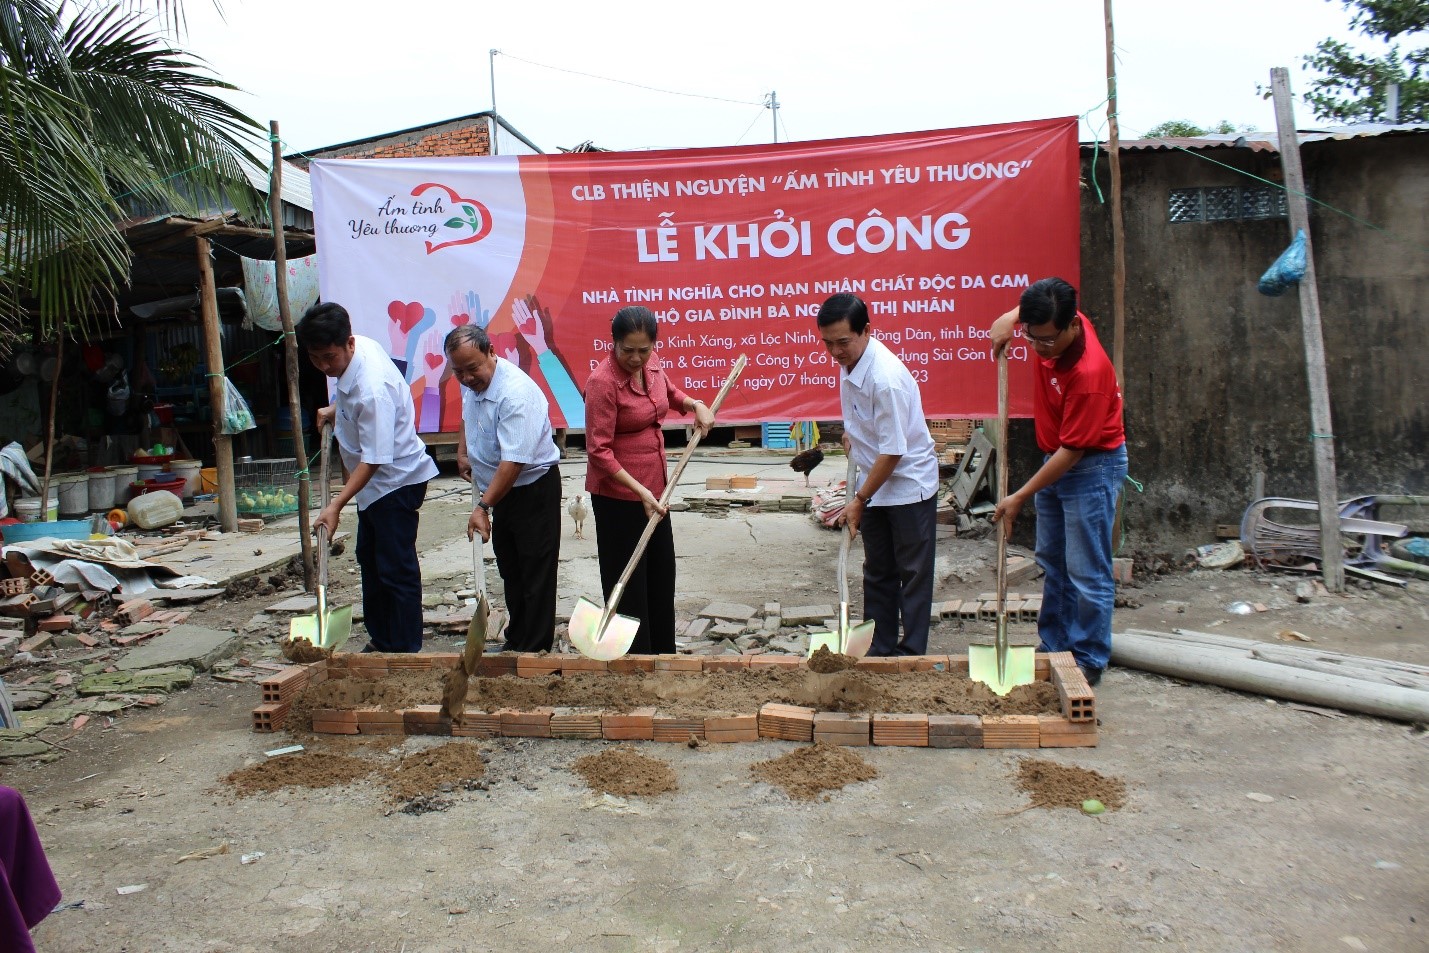 Đại diện CLB thiện nguyện Ấm Tình Yêu Thương cùng đại diện địa phương khởi công xây dựng nhà tình nghĩa cho gia đình bà Nguyễn Thị Nhãn.